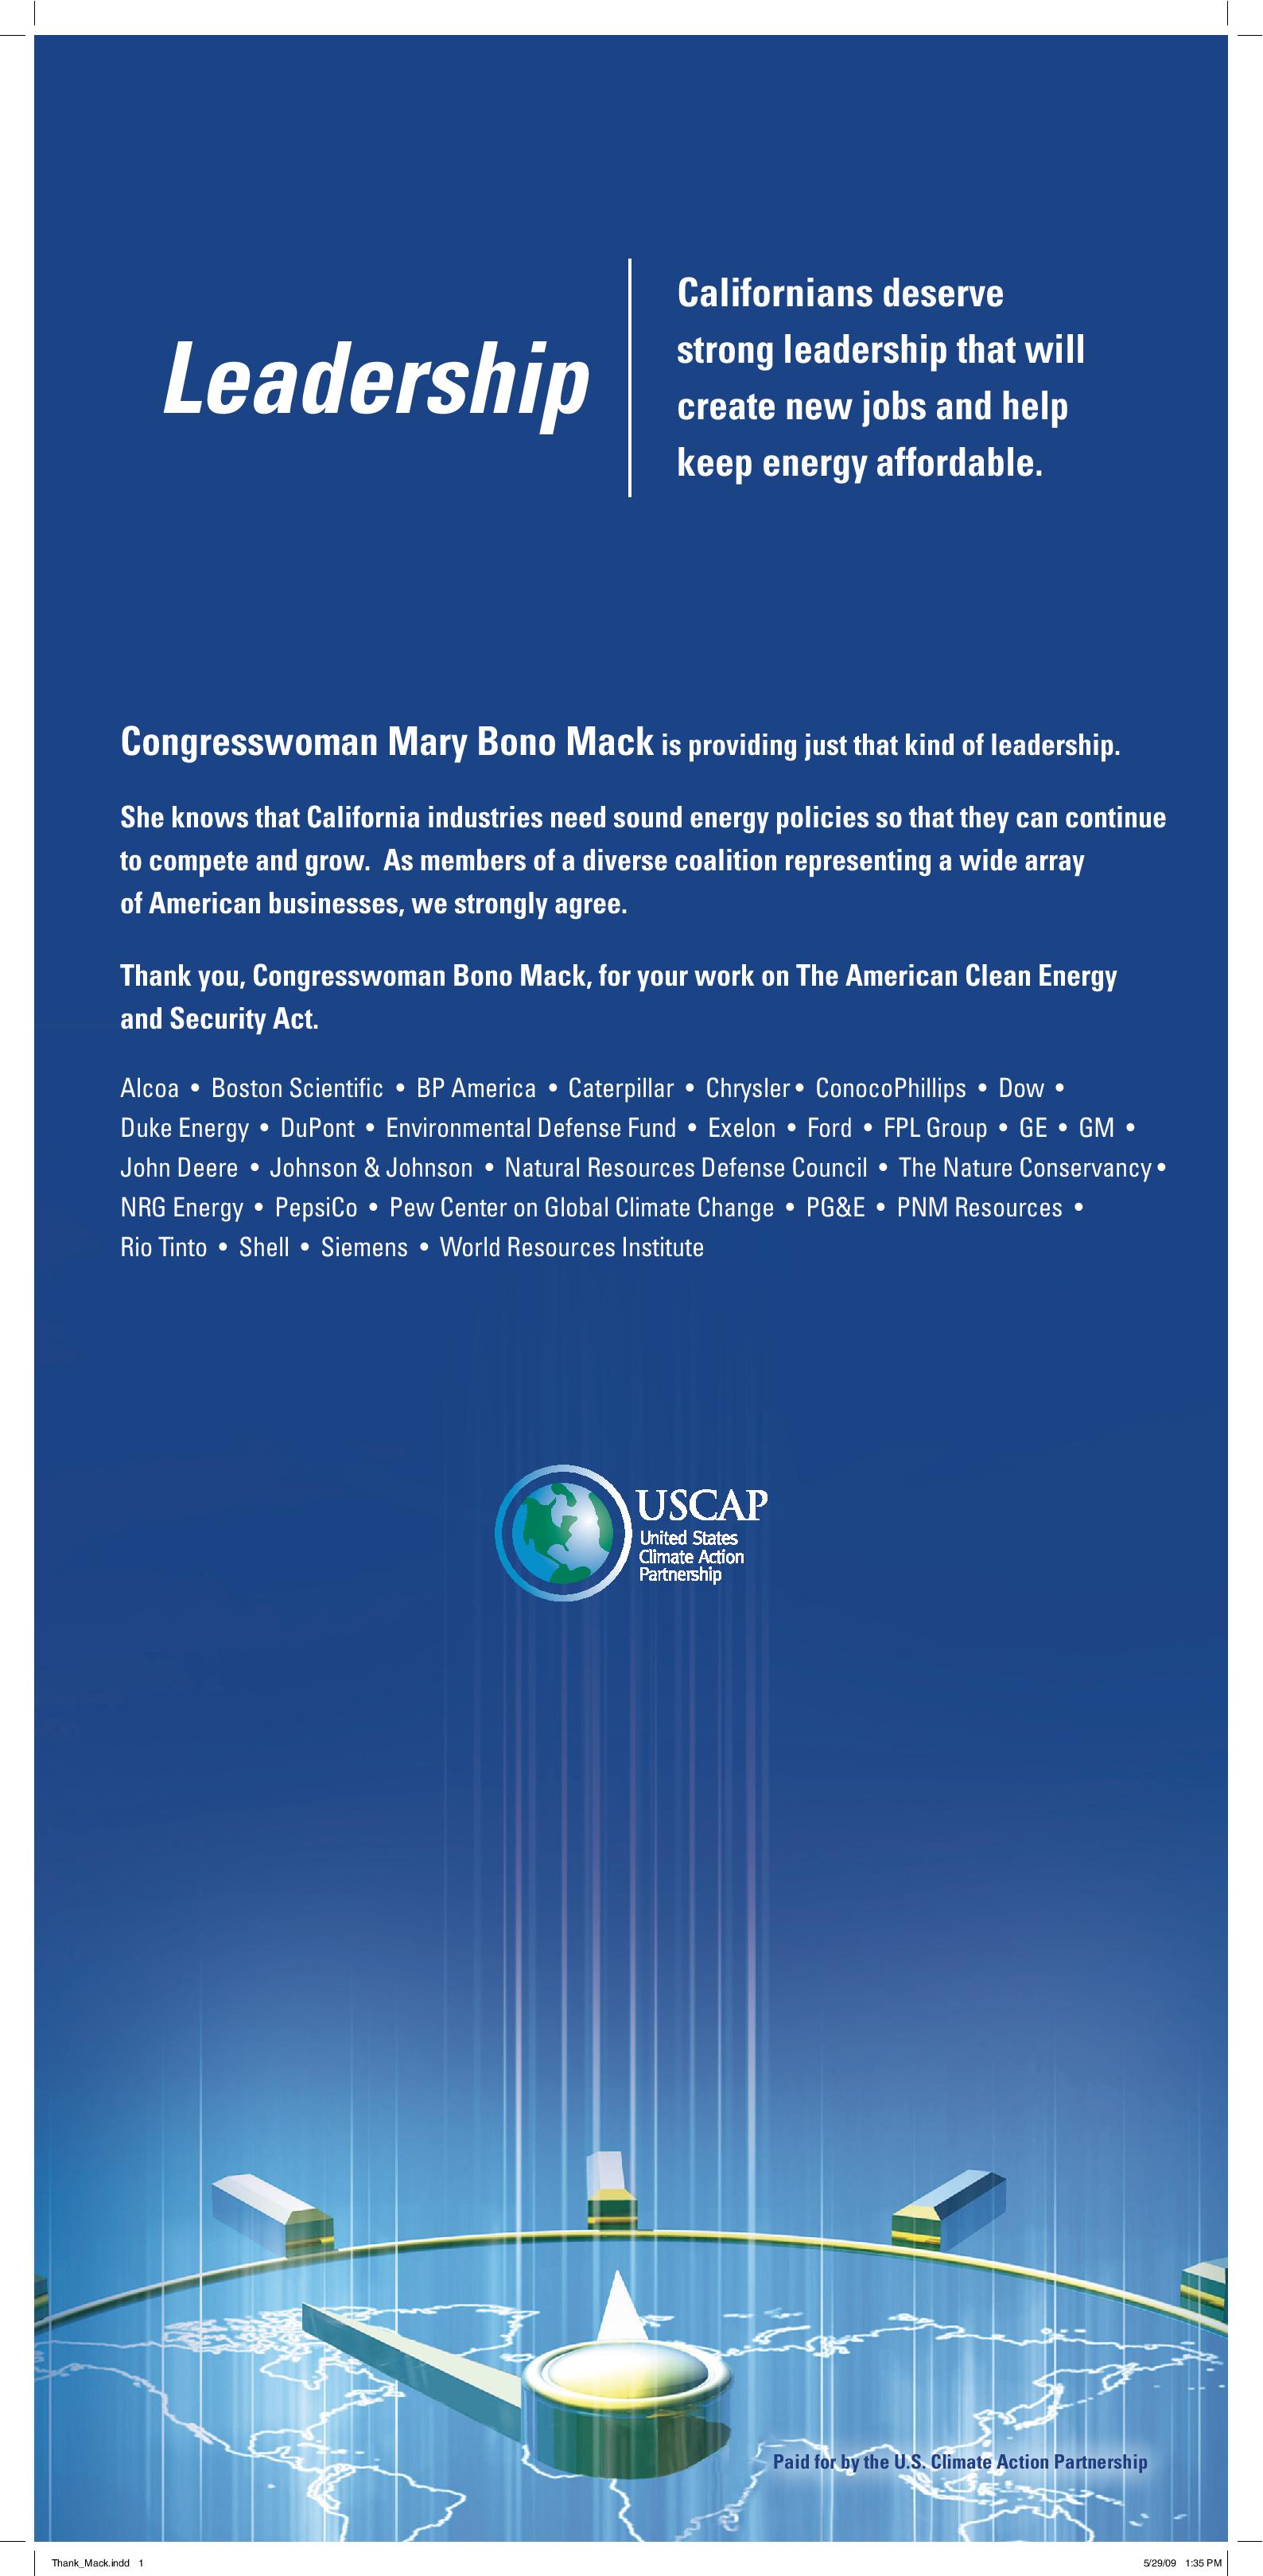 Leadership: Congresswoman Mary Bono Mack